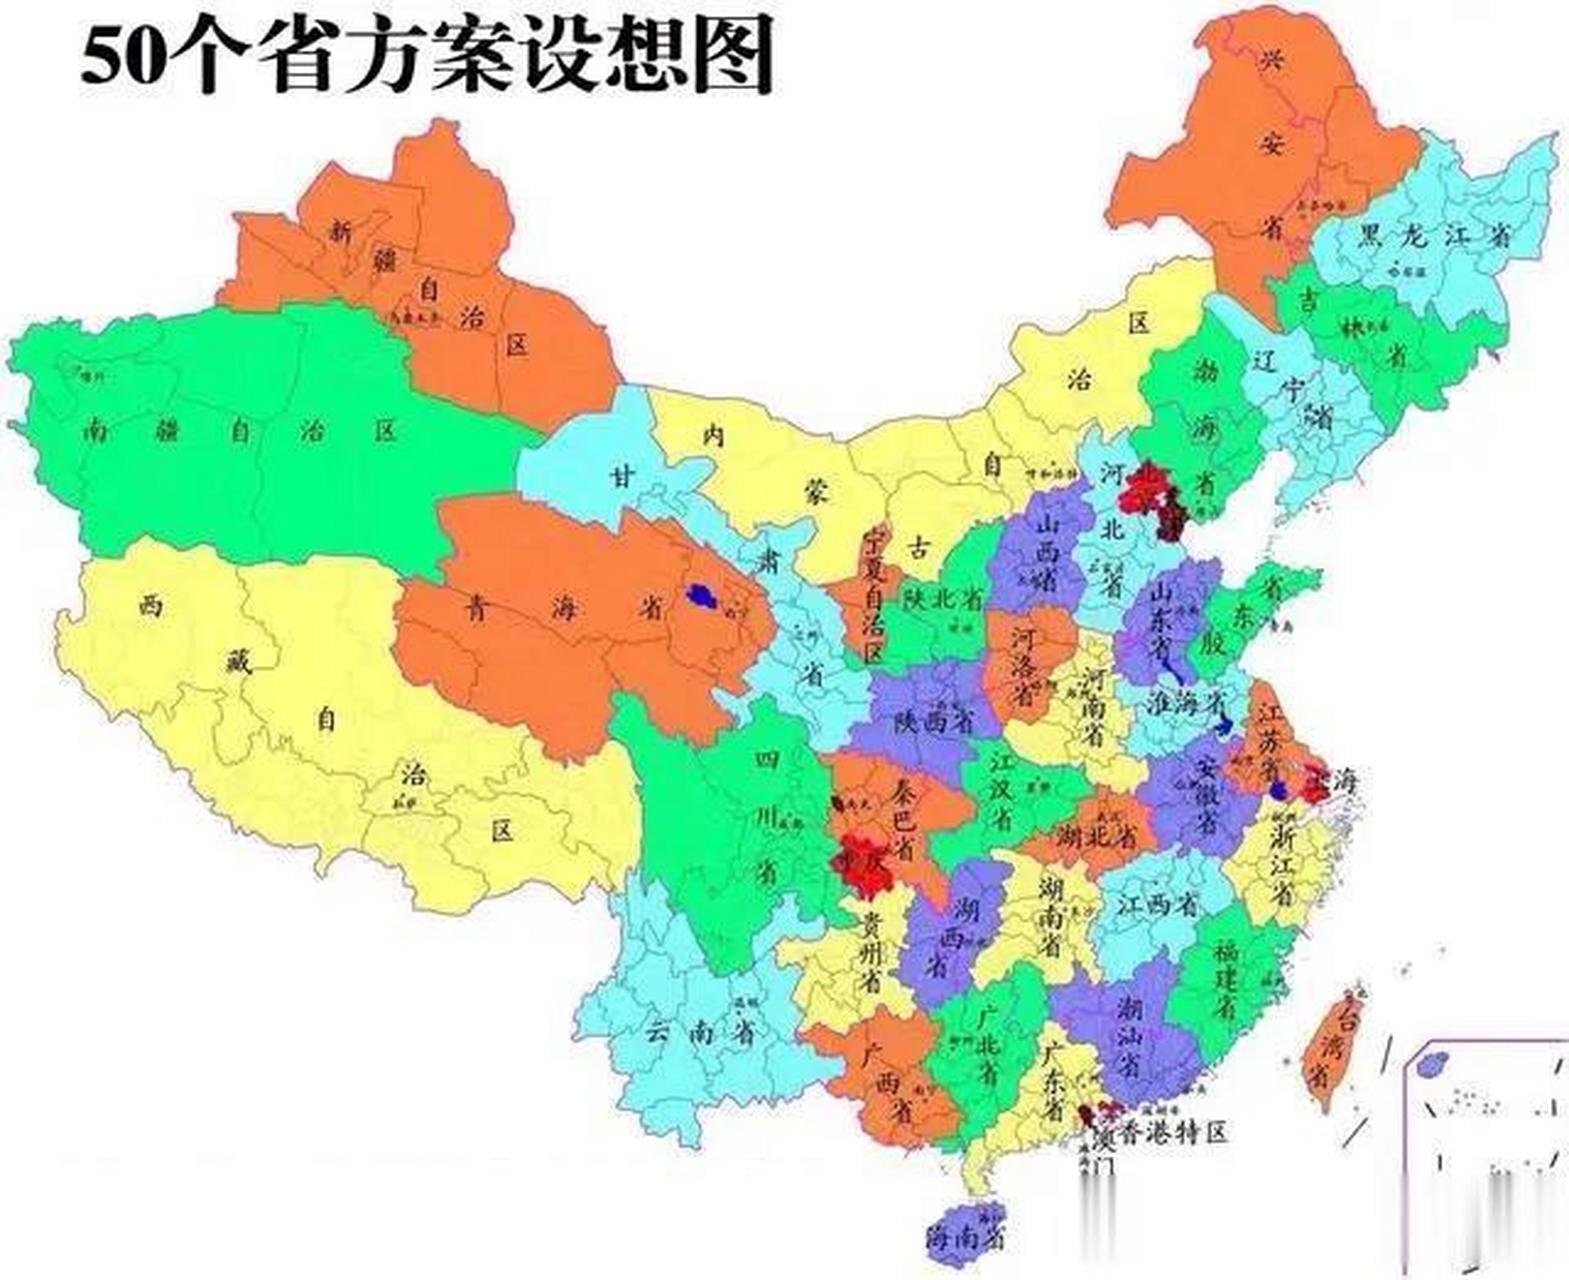 现有省级行政区再拆分,缩小省级范围,省直接管辖县,如划分为50个省市